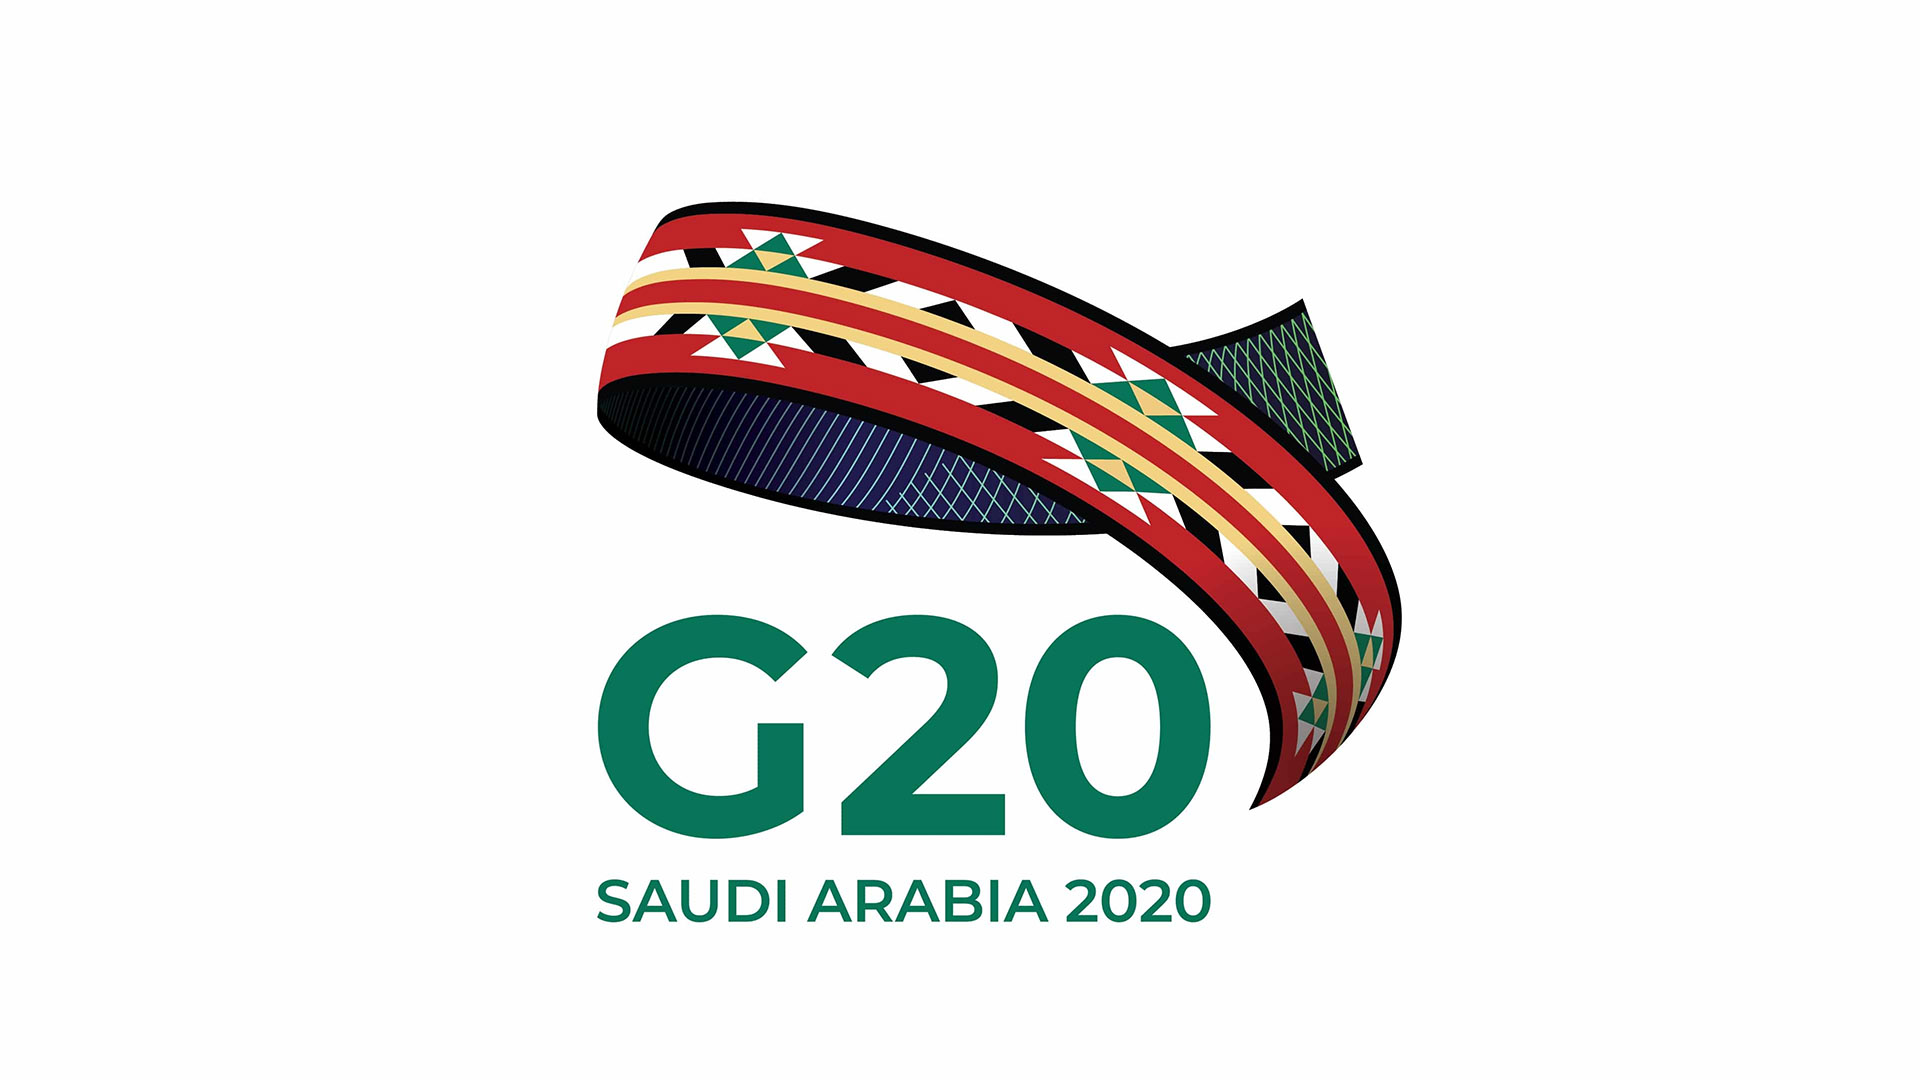 نشست ویژه گروه ۲۰ با محوریت توافق جهانی کاهش تولید نفت